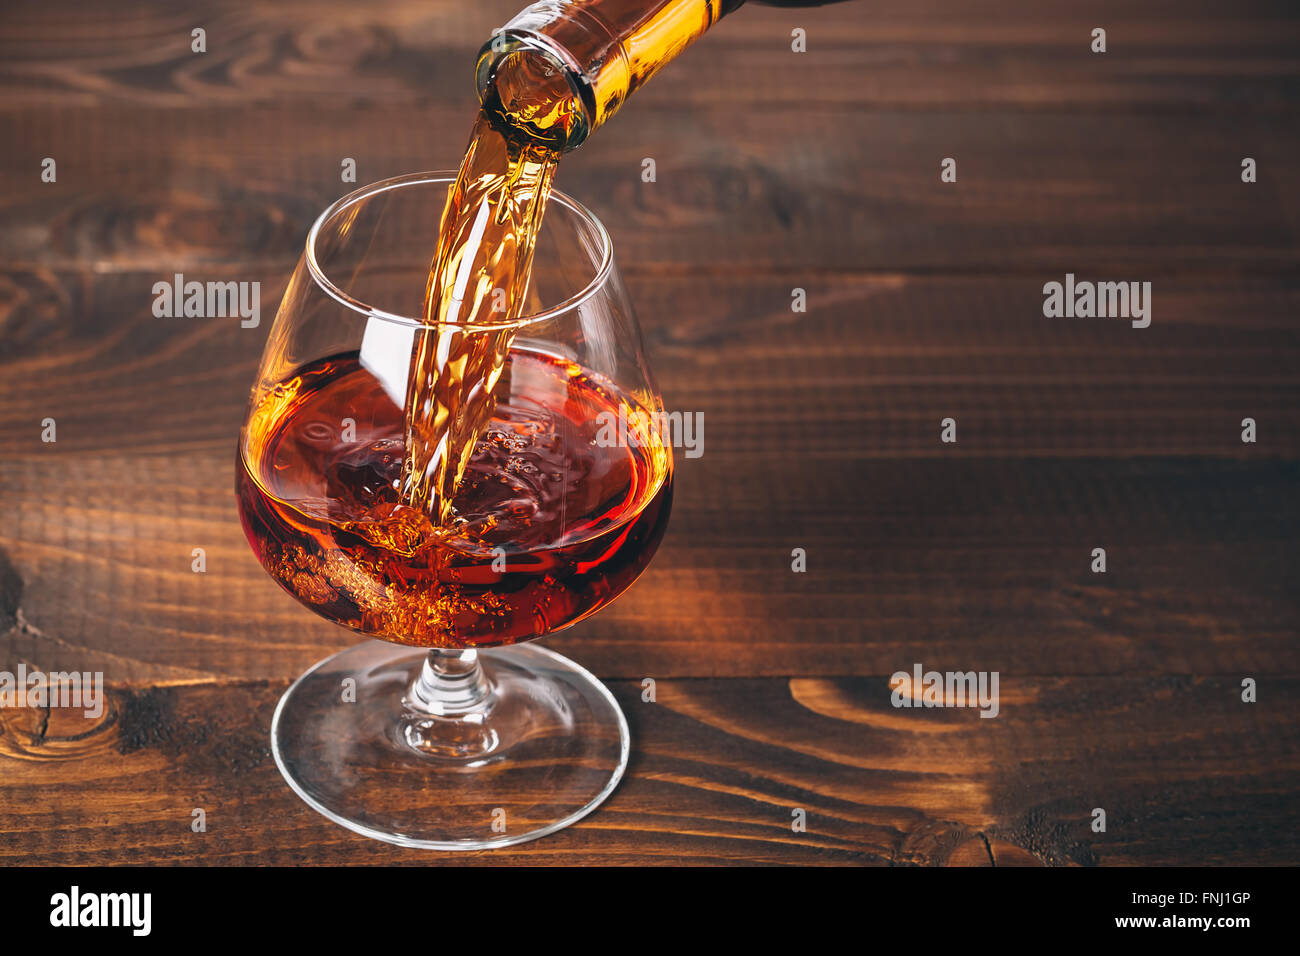 Verser le brandy ou cognac de la bouteille dans le verre contre le fond de bois Banque D'Images